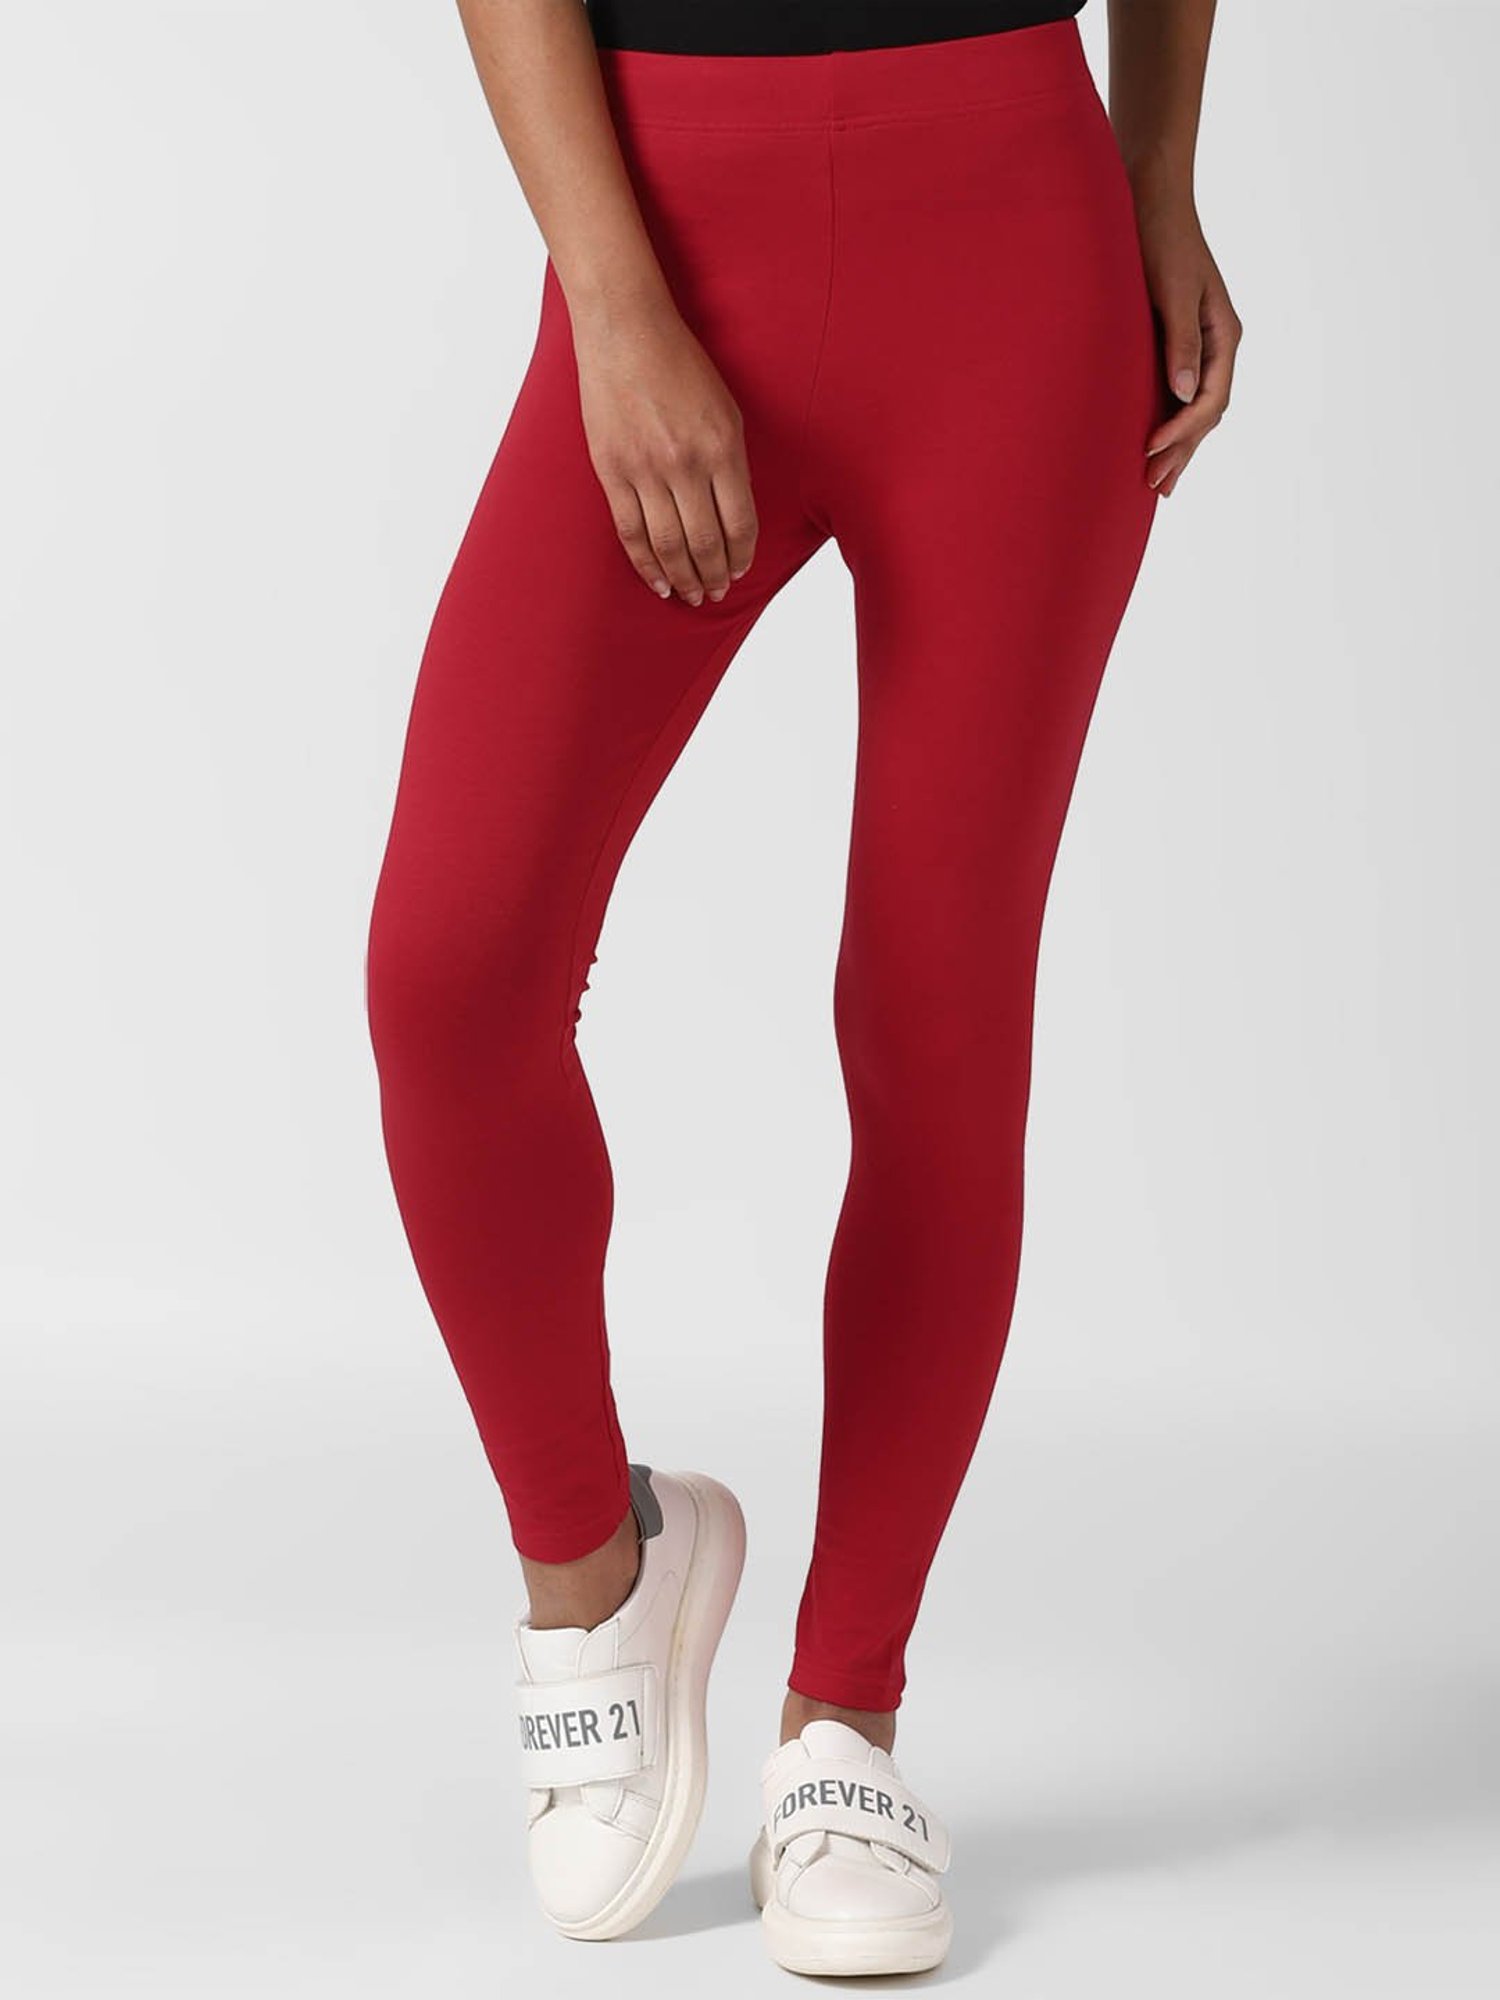 Red Pin-tucked Leggings | Zebra print leggings, Leggings are not pants,  Leggings fashion